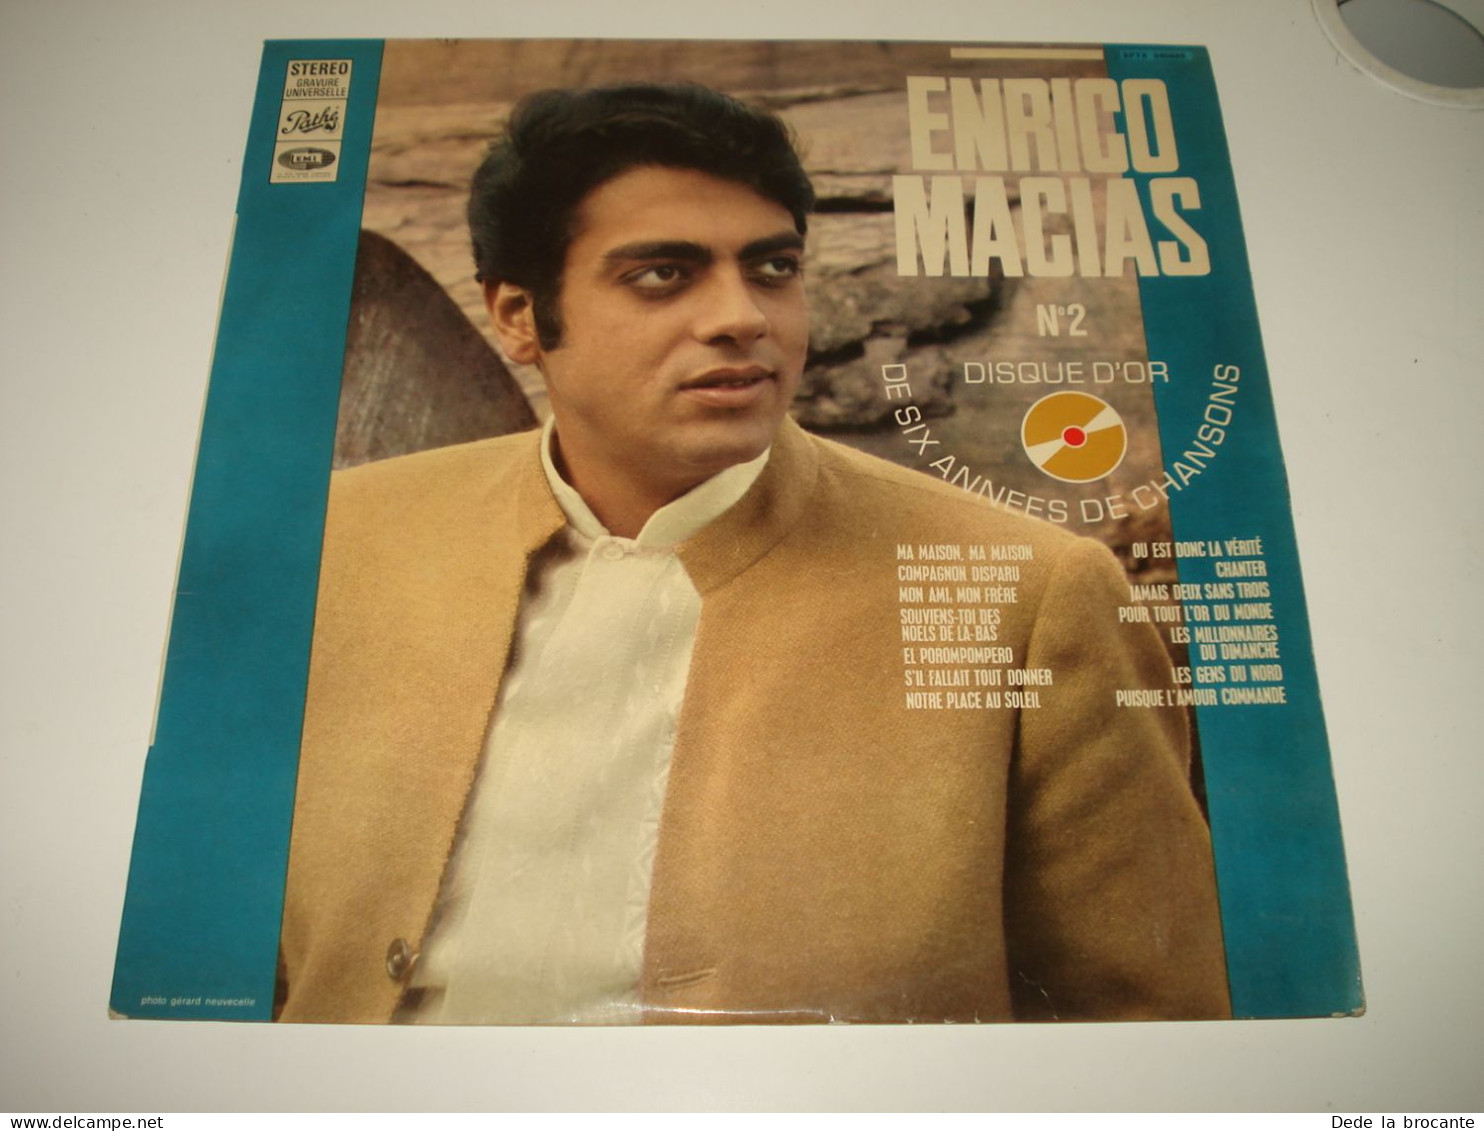 B13 / Enrico Macias – Disque D'or N°2 - Pathé – SPTX 340665 - France 1968  NM/EX - Disco, Pop